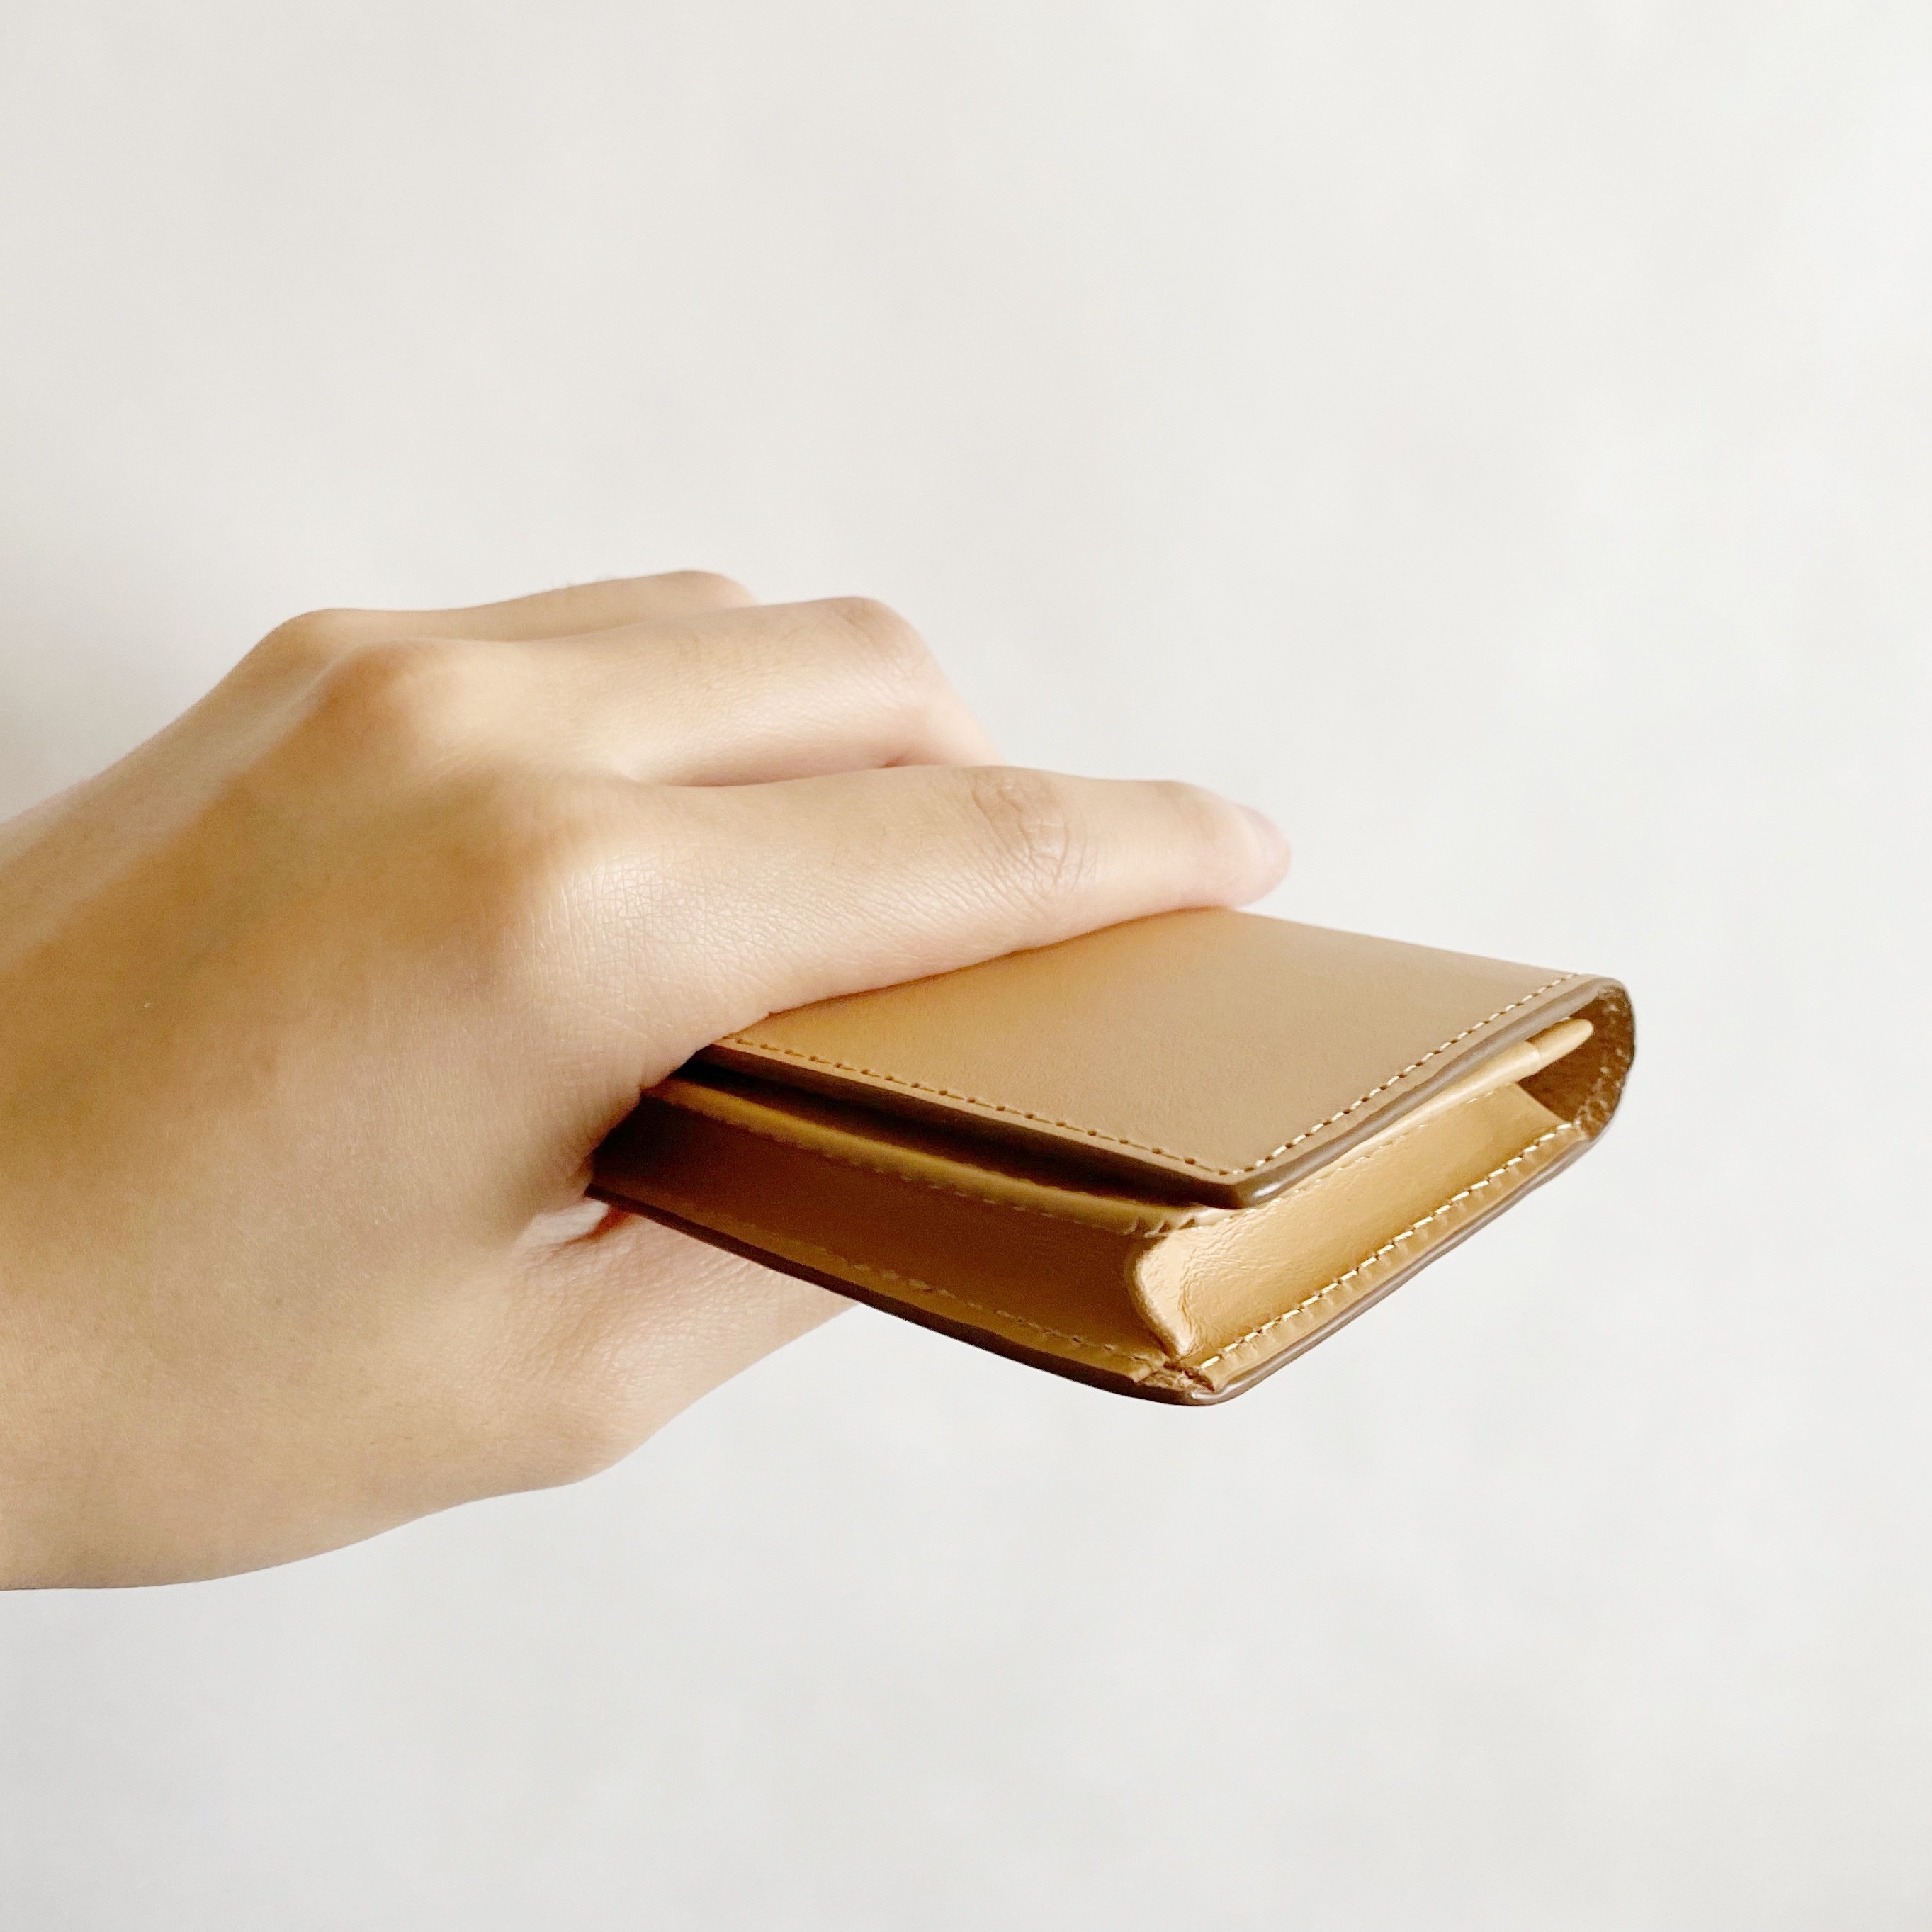 ミニ財布として使える 無印良品 革のカードケース がめっちゃ便利です